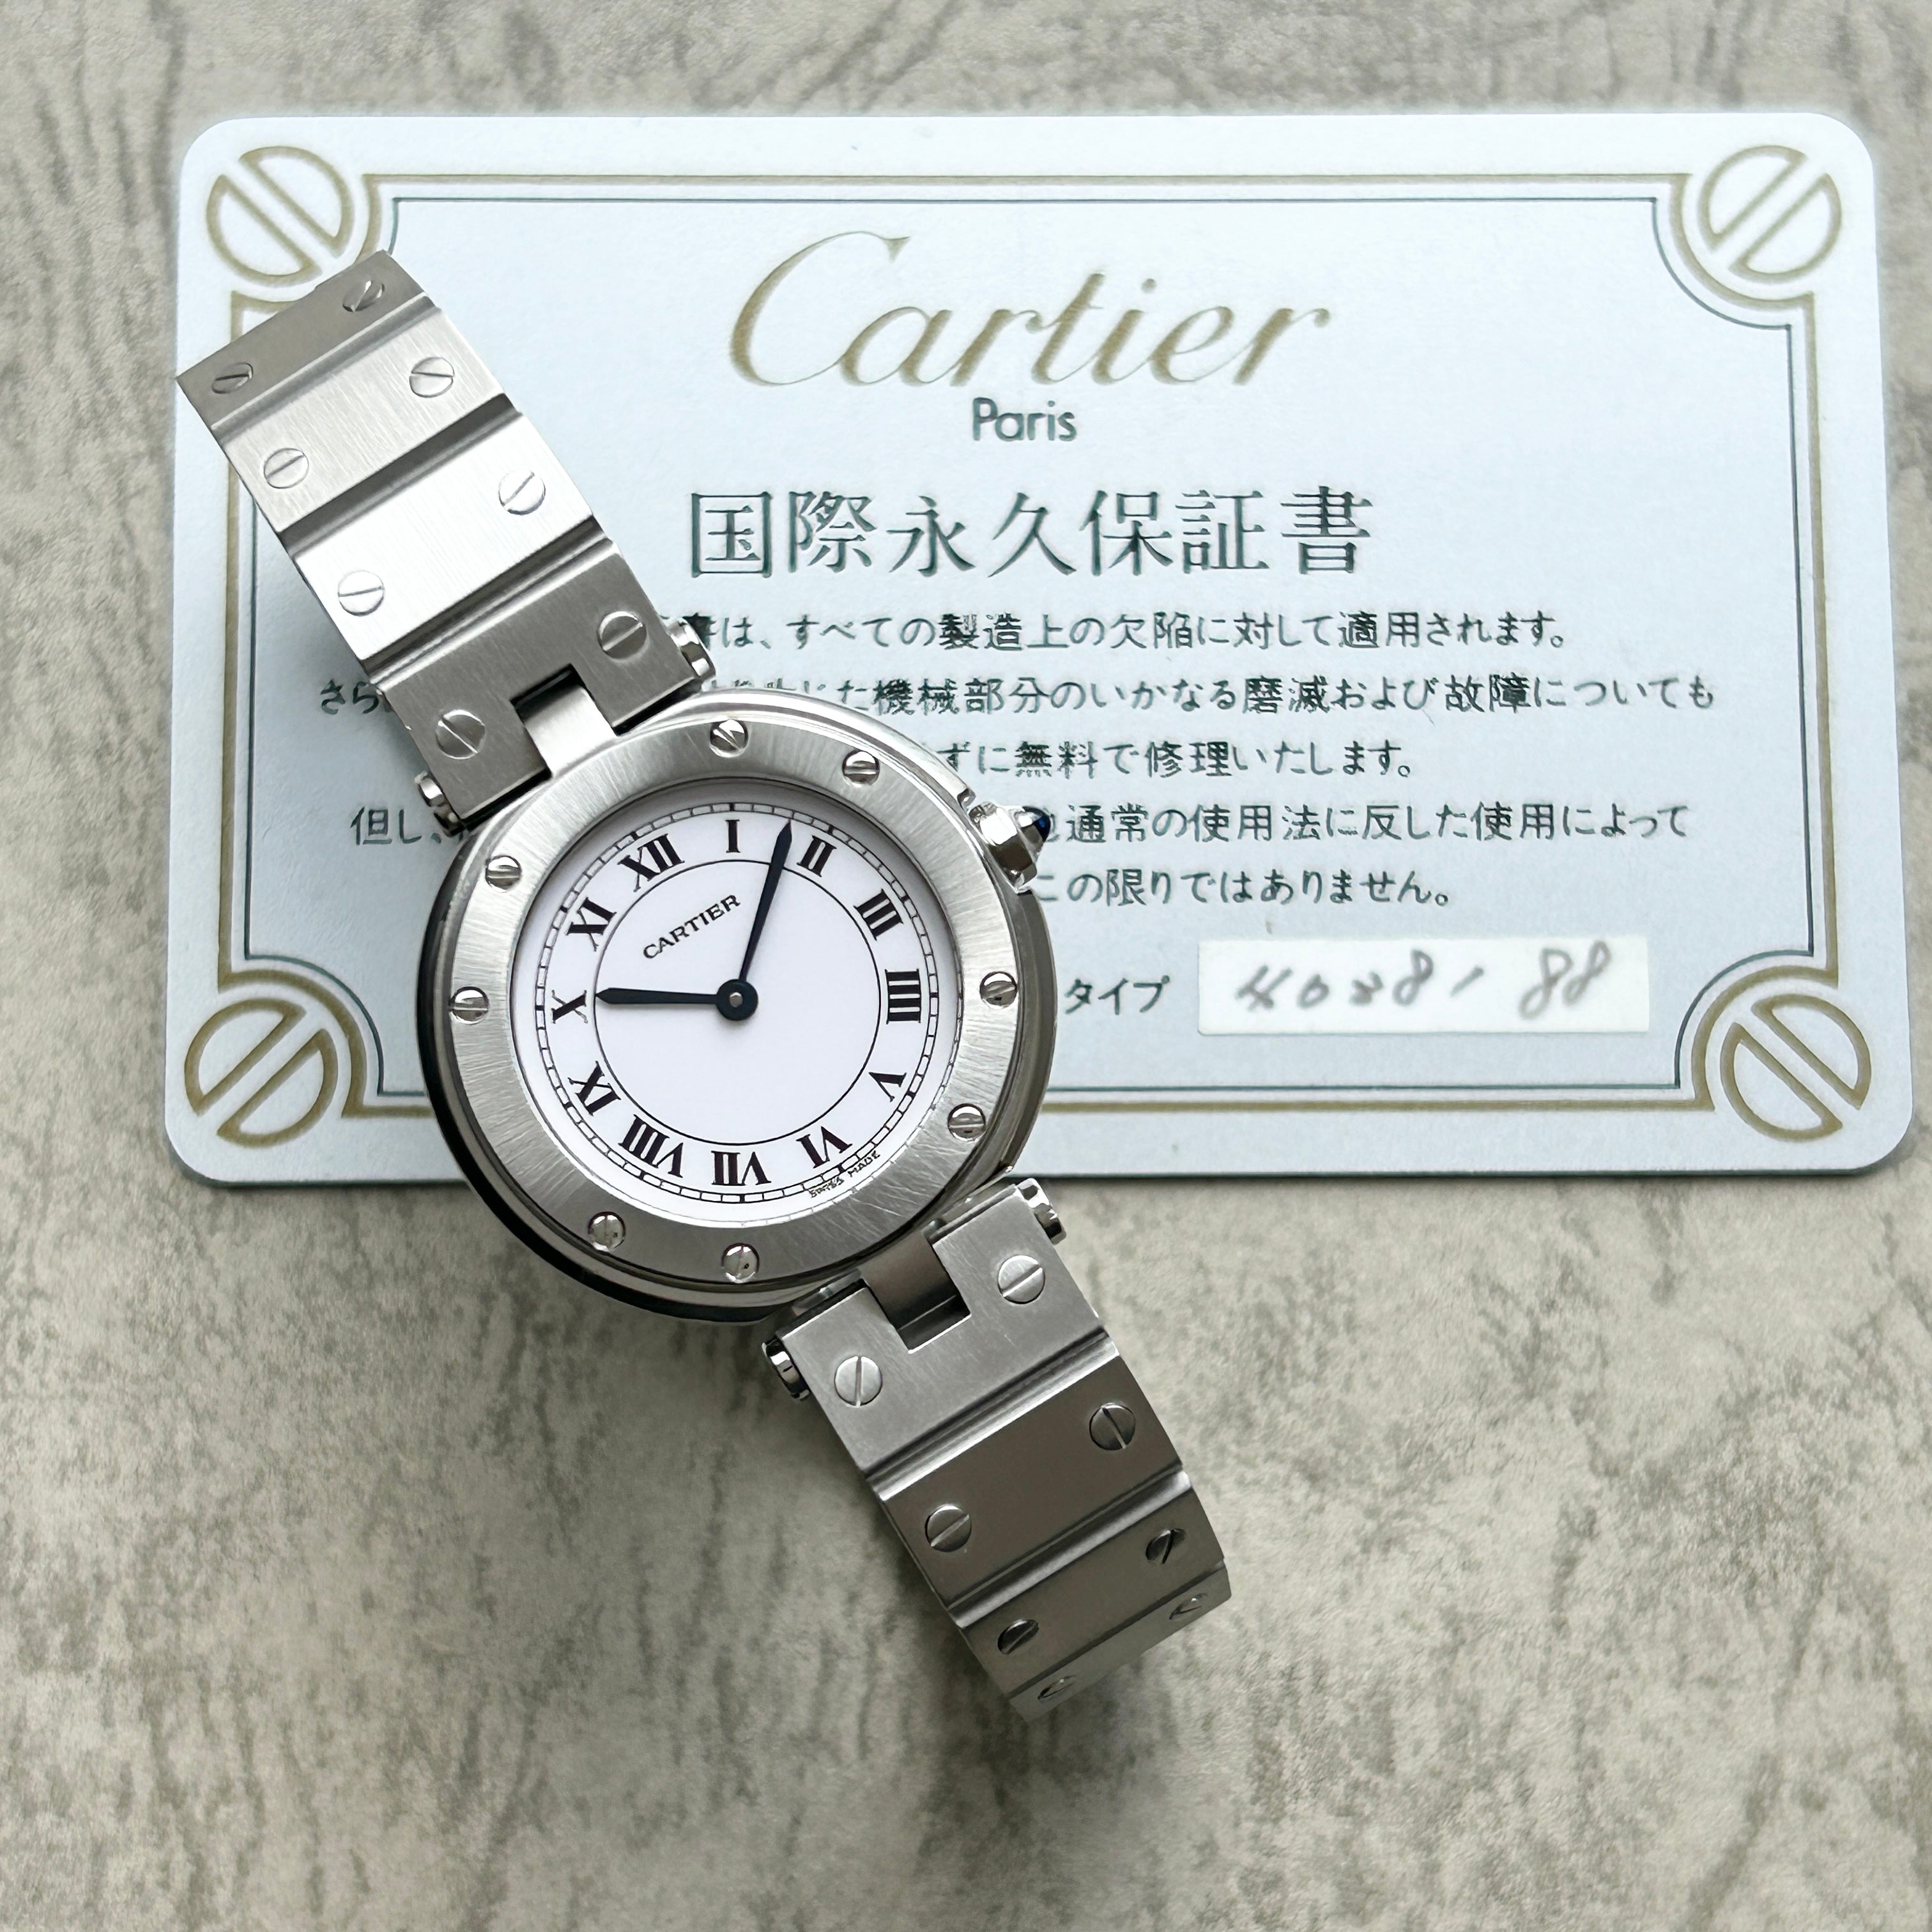 【Cartier】サントスラウンドSMステンレス 永久保証書付き